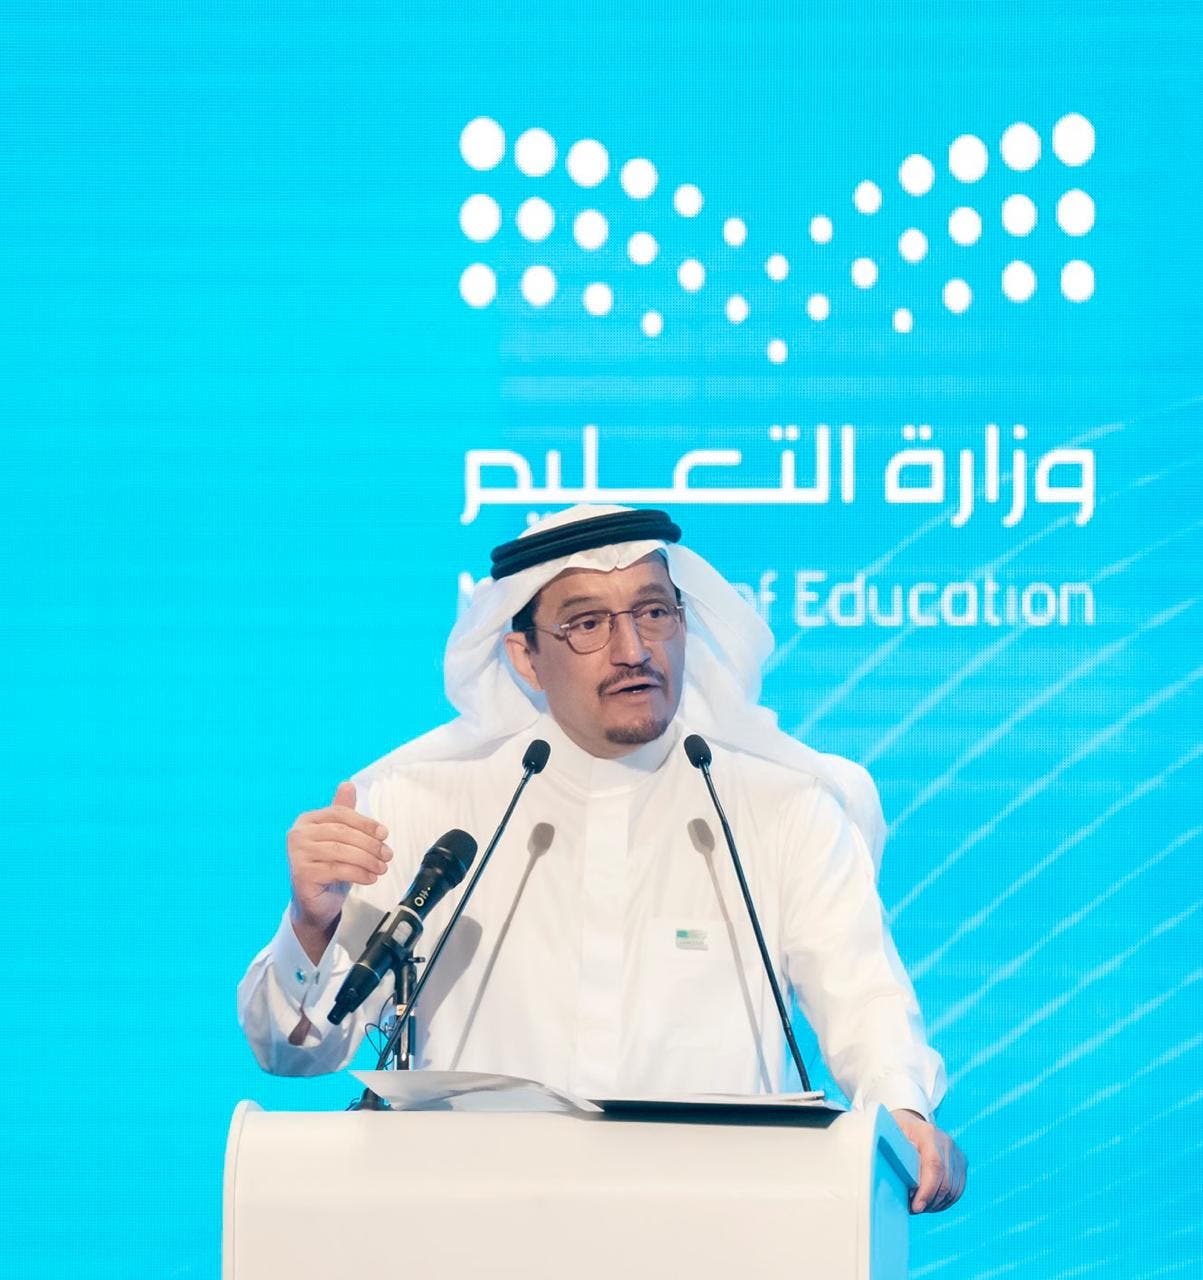 التعليم السعودي توضح حقيقة إلغاء المدارس في شهر رمضان عبر وزارة التعليم 1443